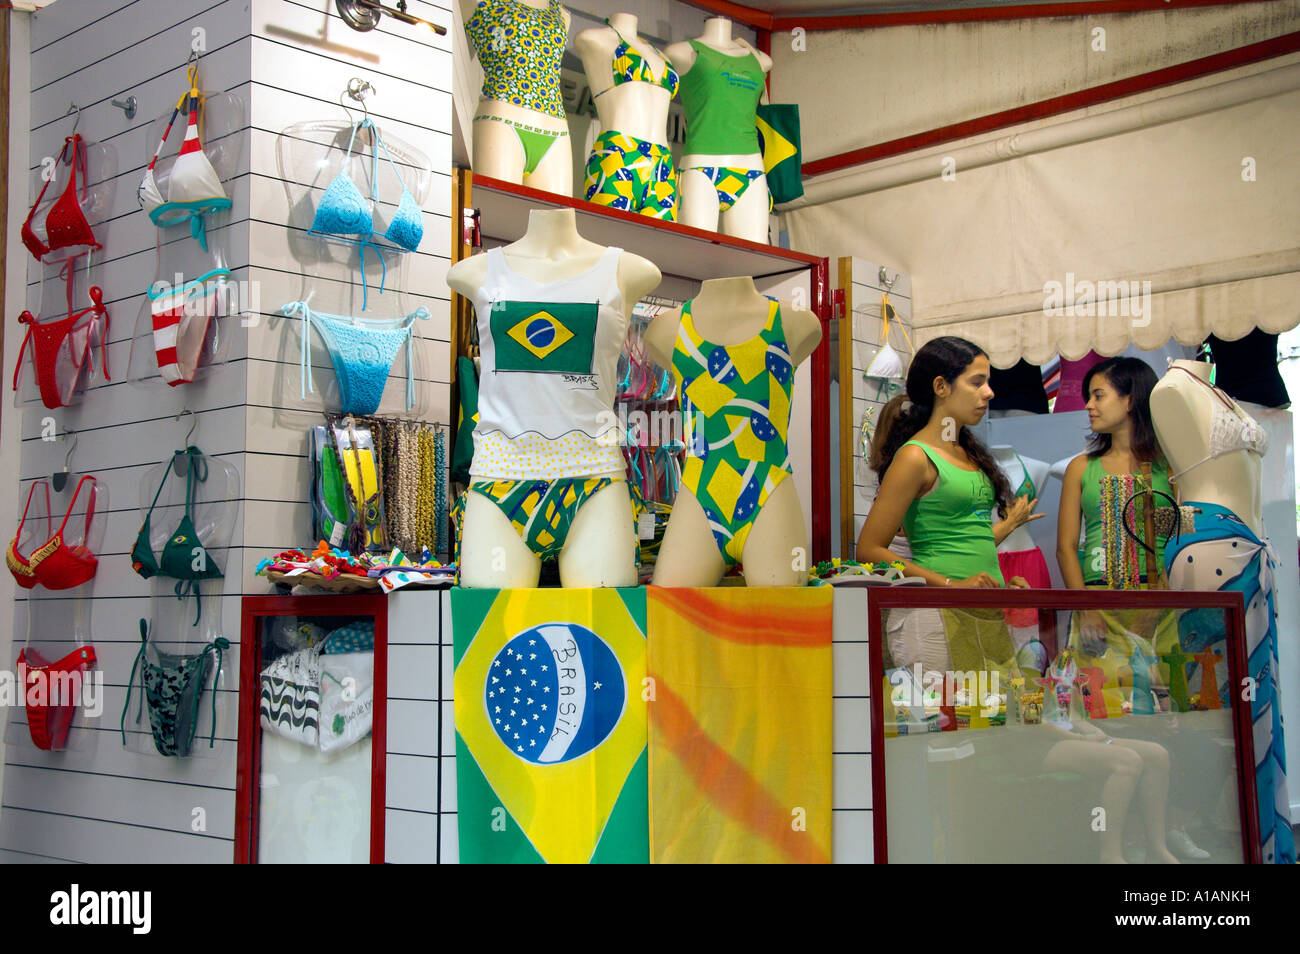 Ein Bikini und Schwimmen Anzug Shop in Rio De Janeiro Brasilien  Stockfotografie - Alamy